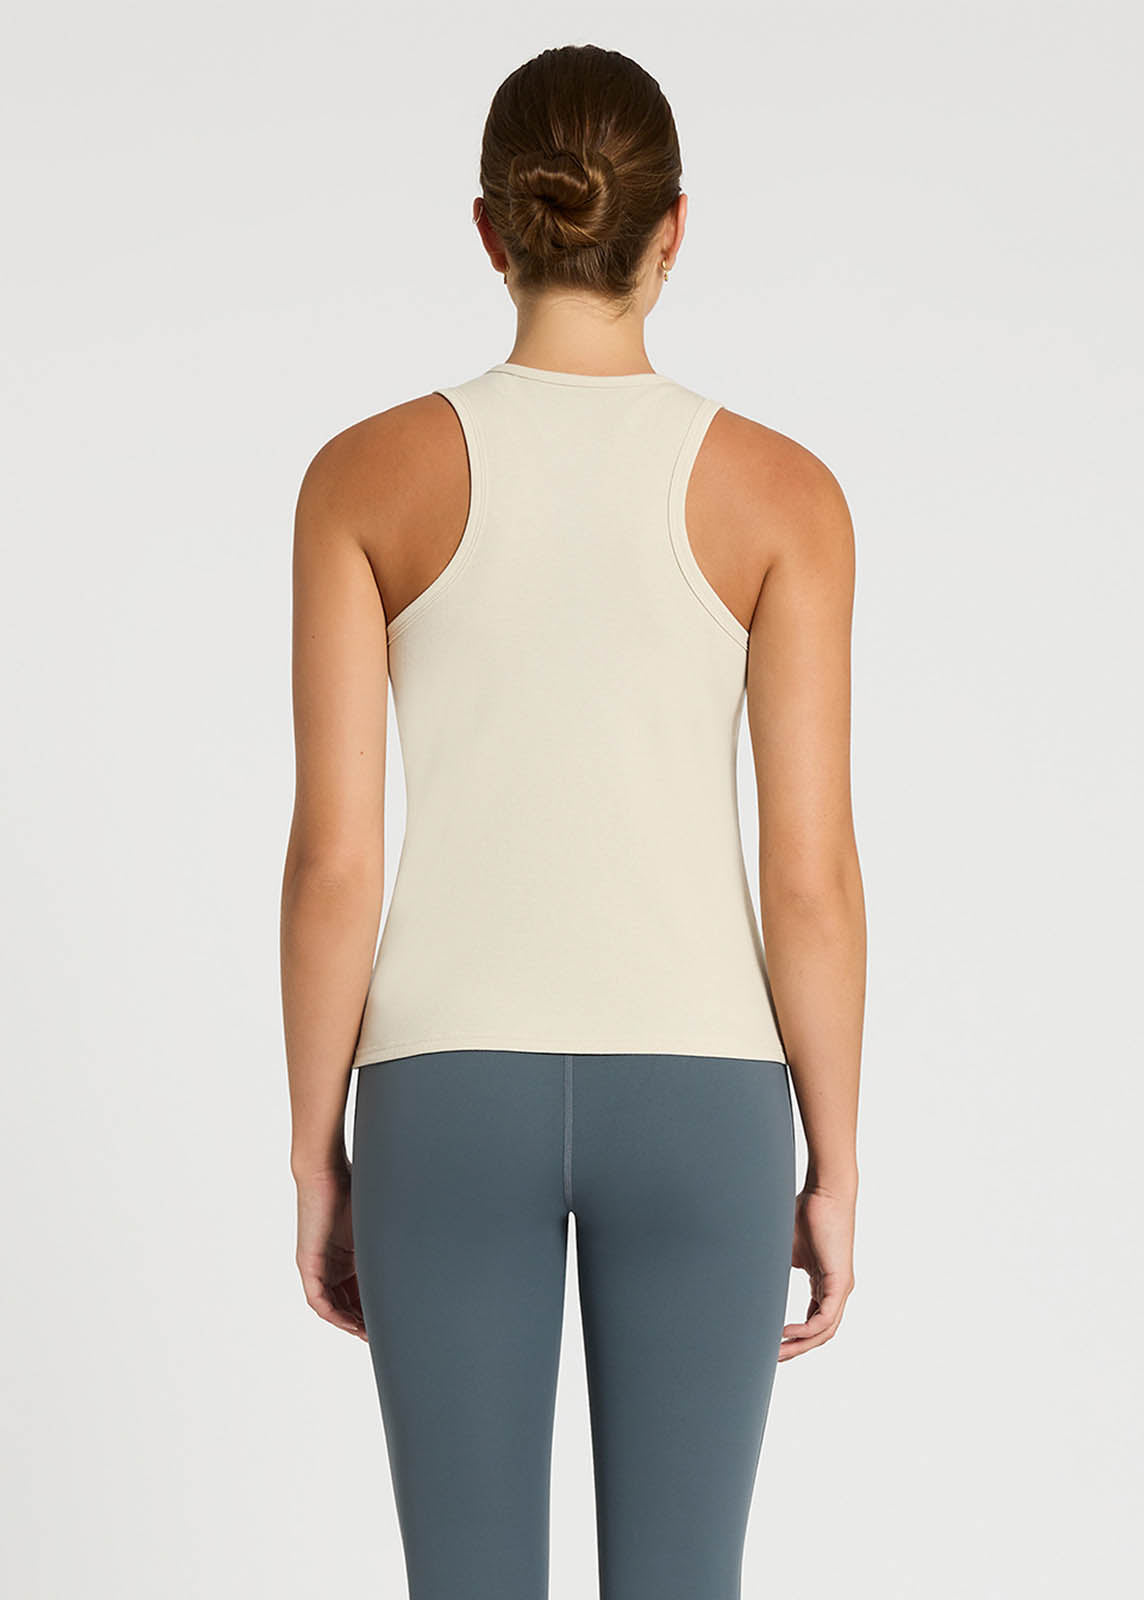 CBGELRT Womens Tops Casual Silk Tops for Women Racerbacks Workout Yoga Tank  Tops Sleeveless Women Activewear Tops ,xl